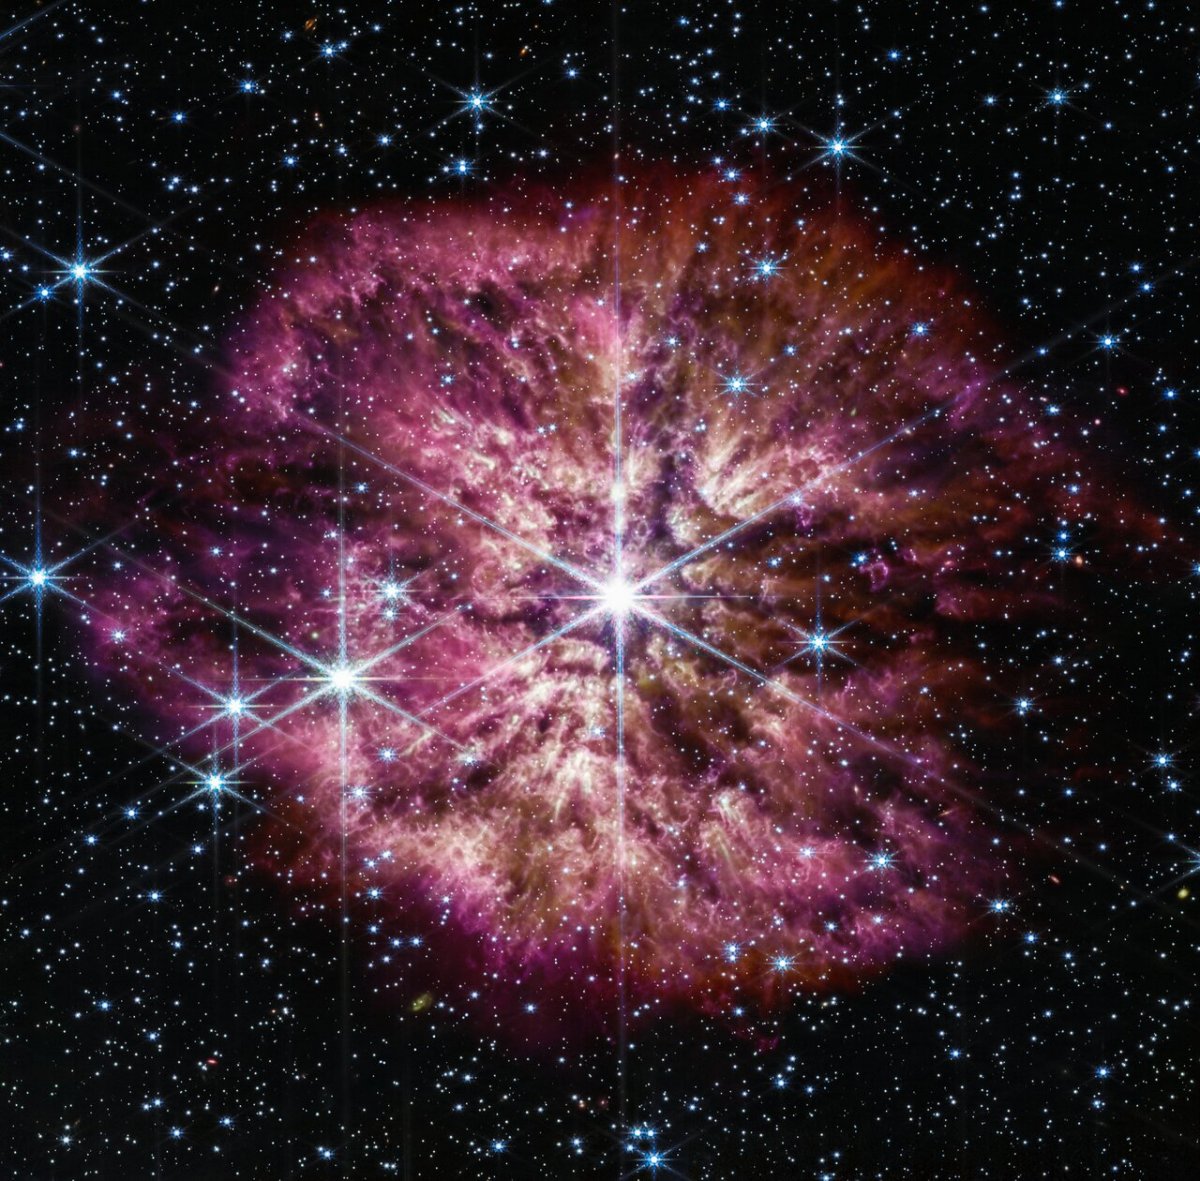 The James Webb Space Telescope images a rare supernova precursor